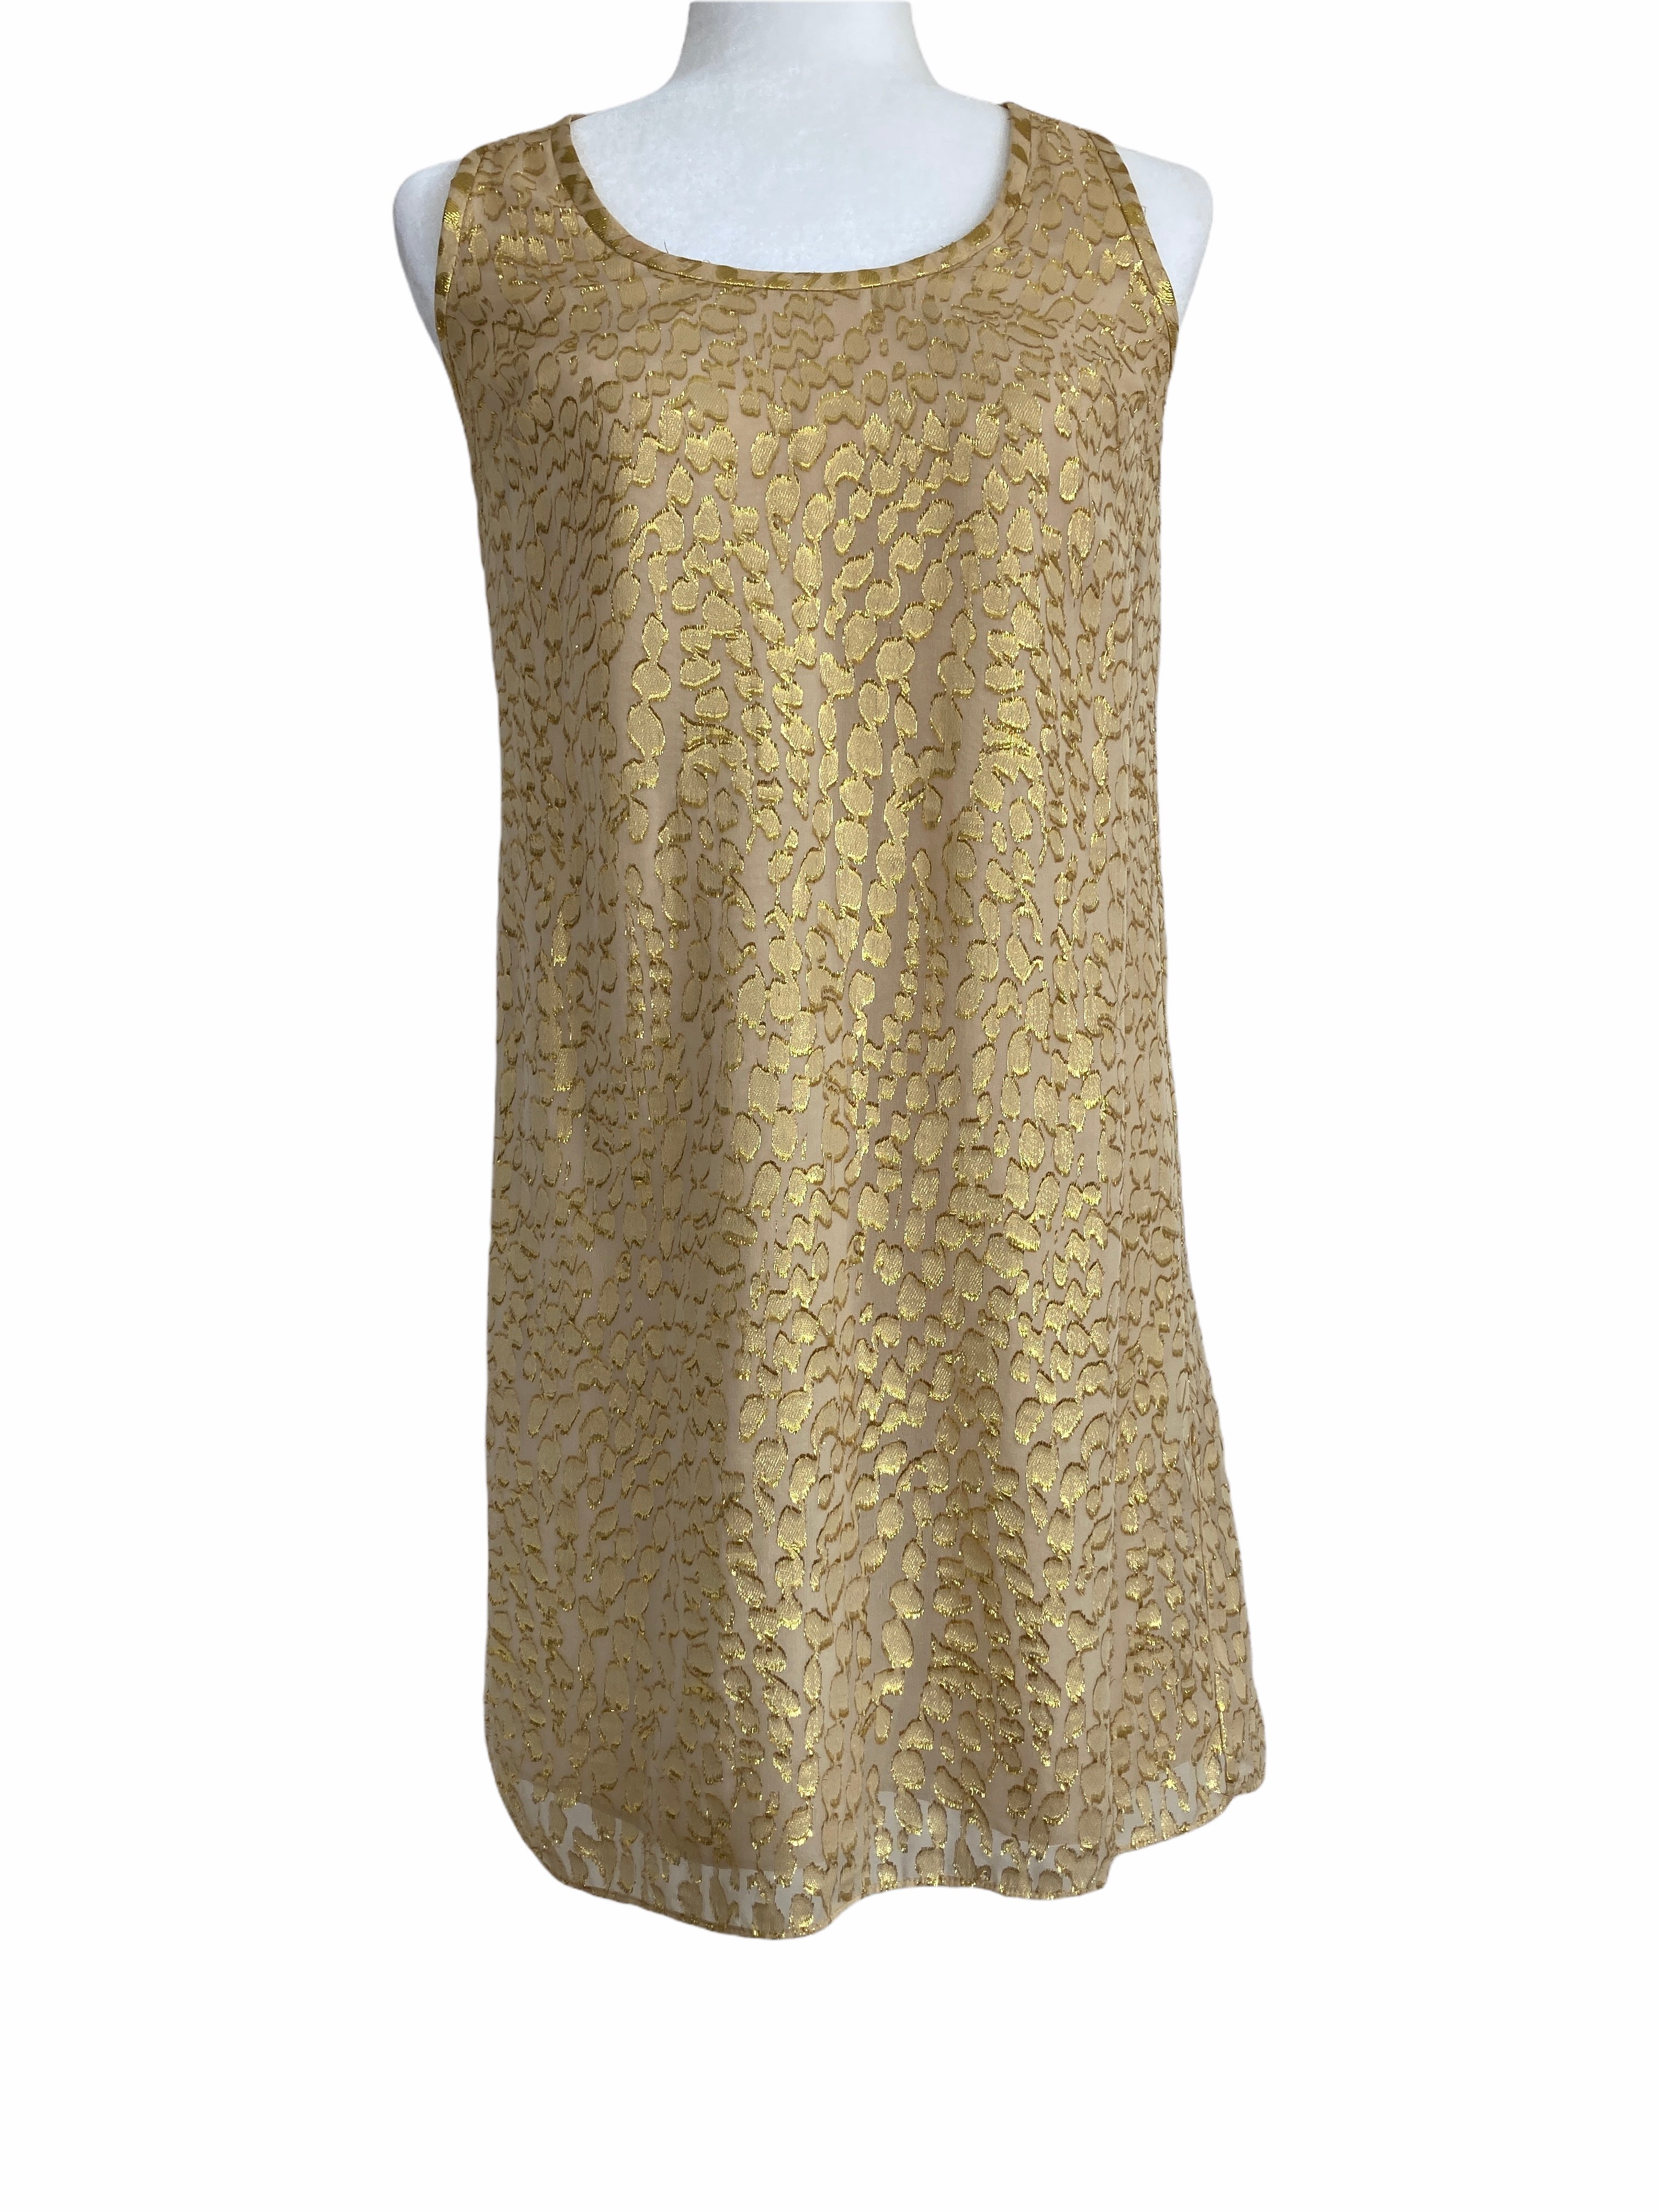 Lilly Pulitzer Gold Mini Dress, S